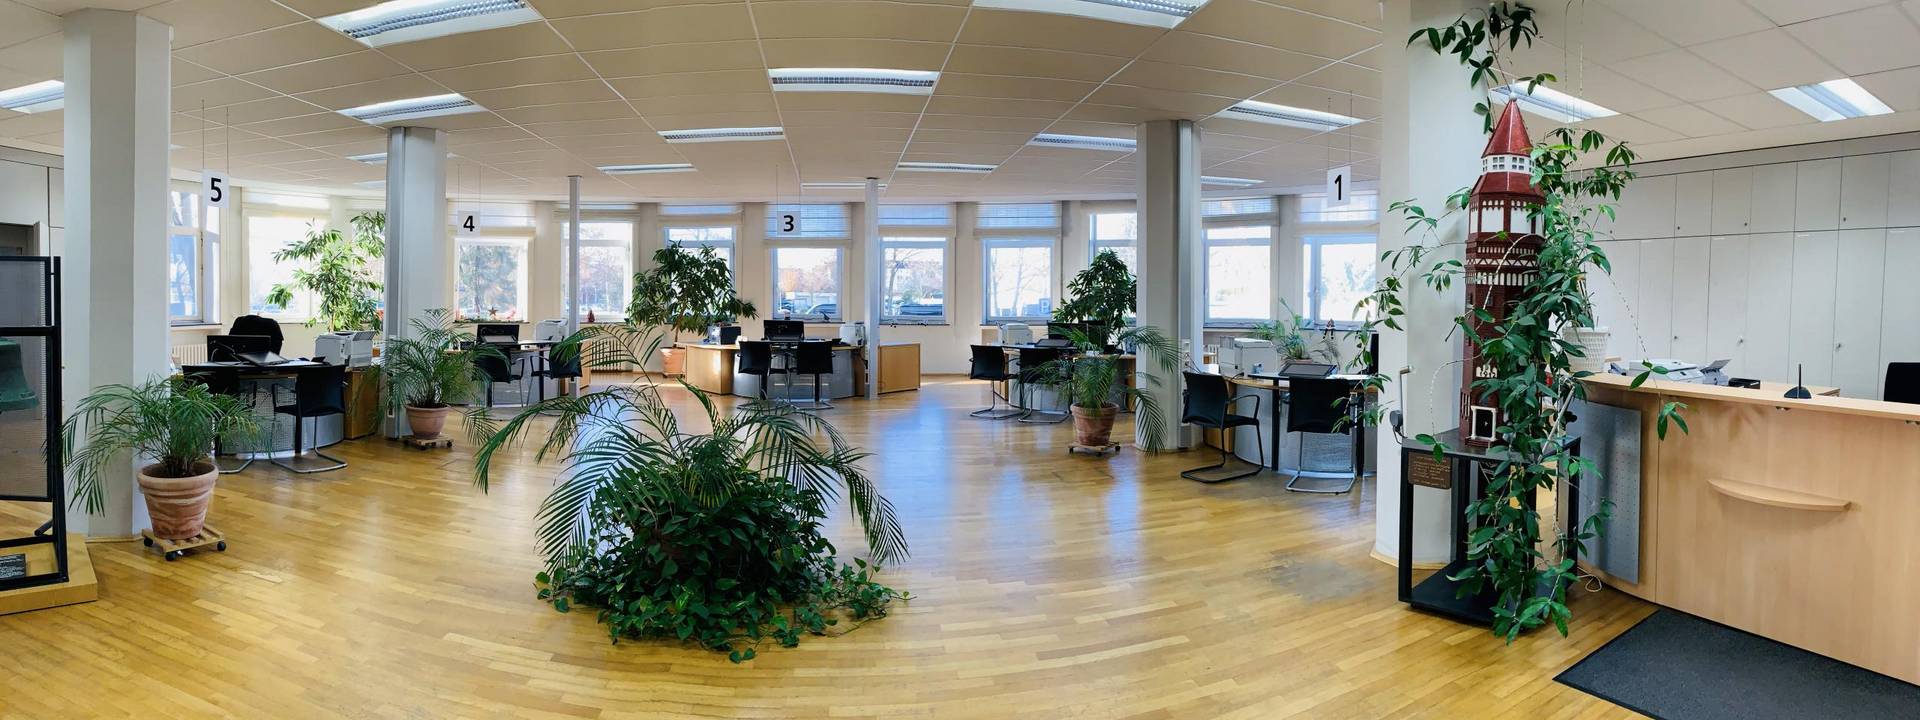 bürgerbüro panorama